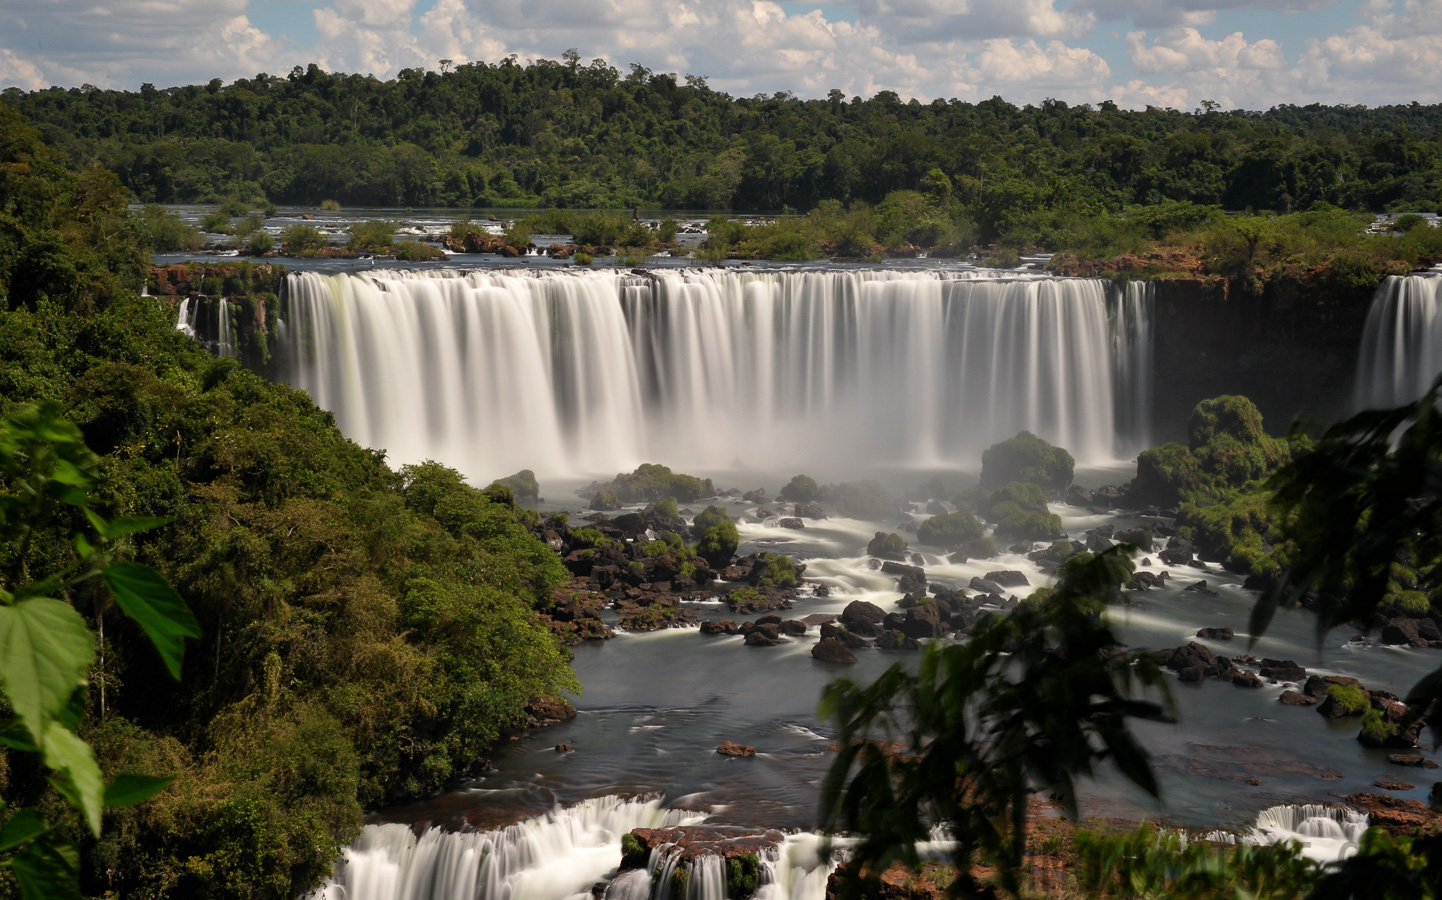 Cataratas del Iguazu [62 mm, 10.0 Sek. bei f / 22, ISO 400]